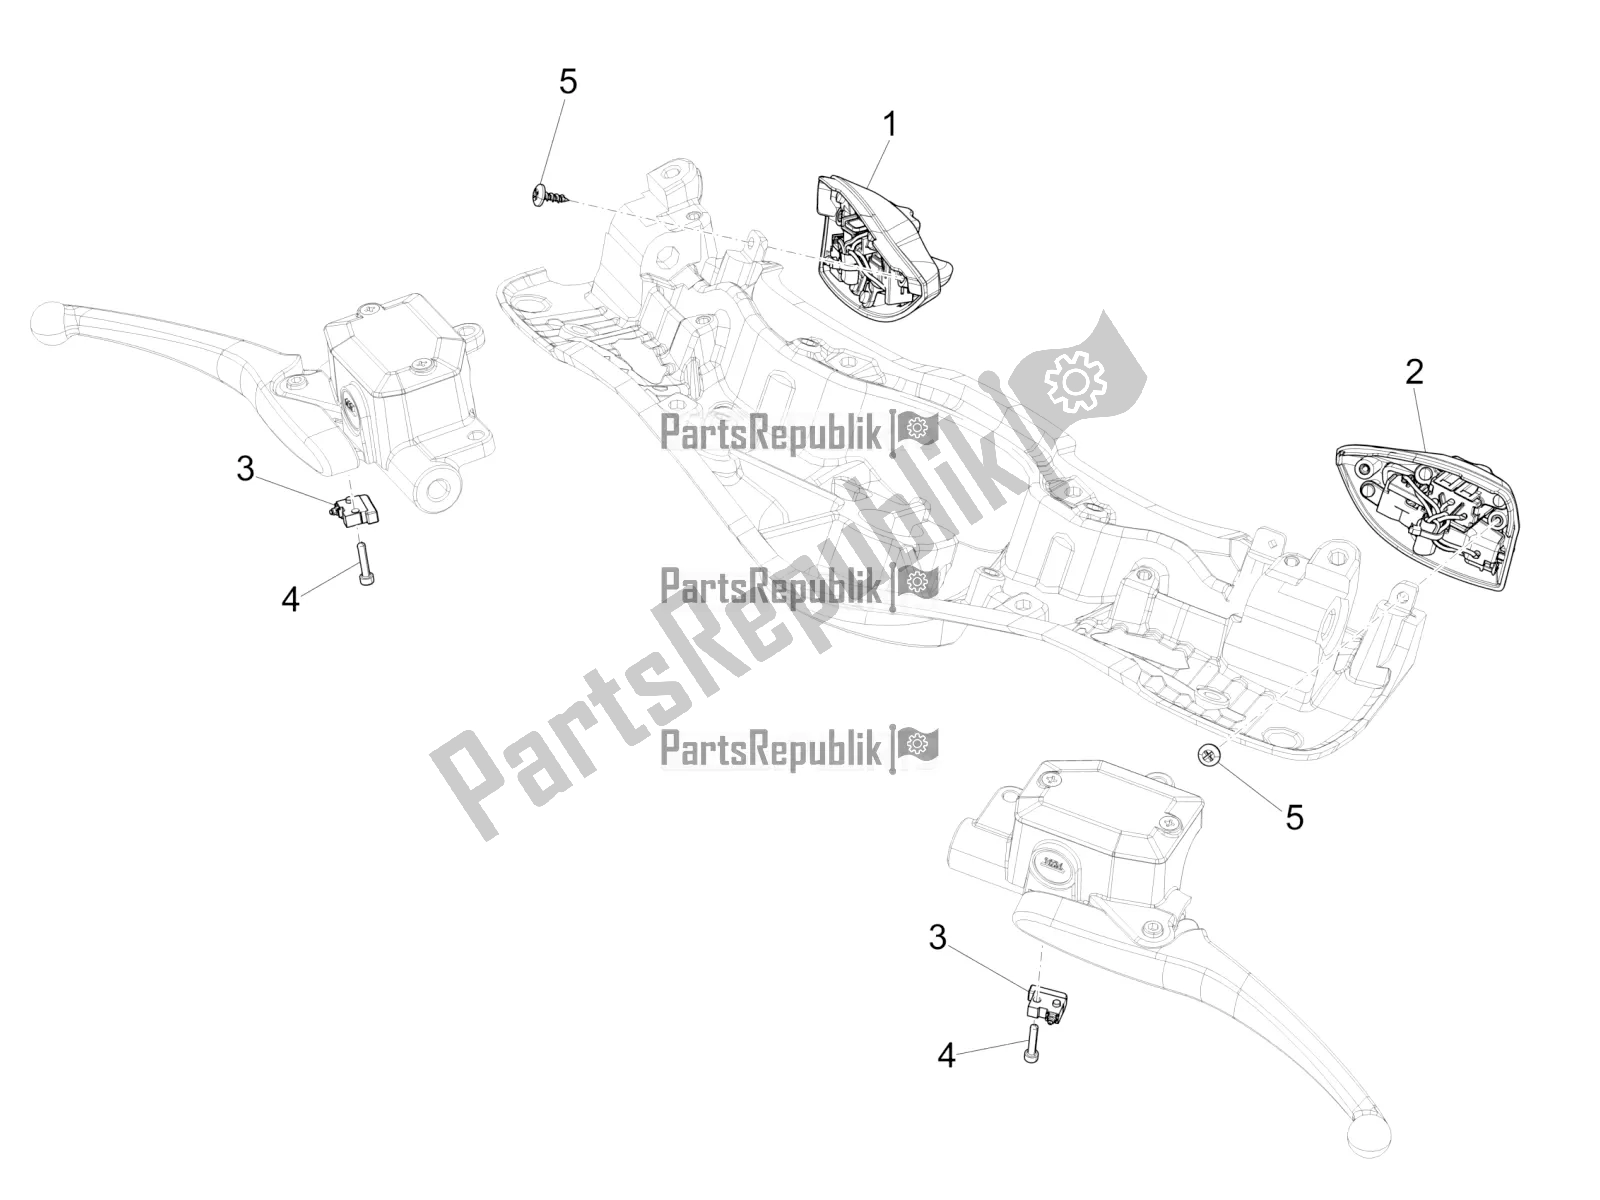 Todas as partes de Seletores - Interruptores - Botões do Vespa 946 125 ABS CD 2021